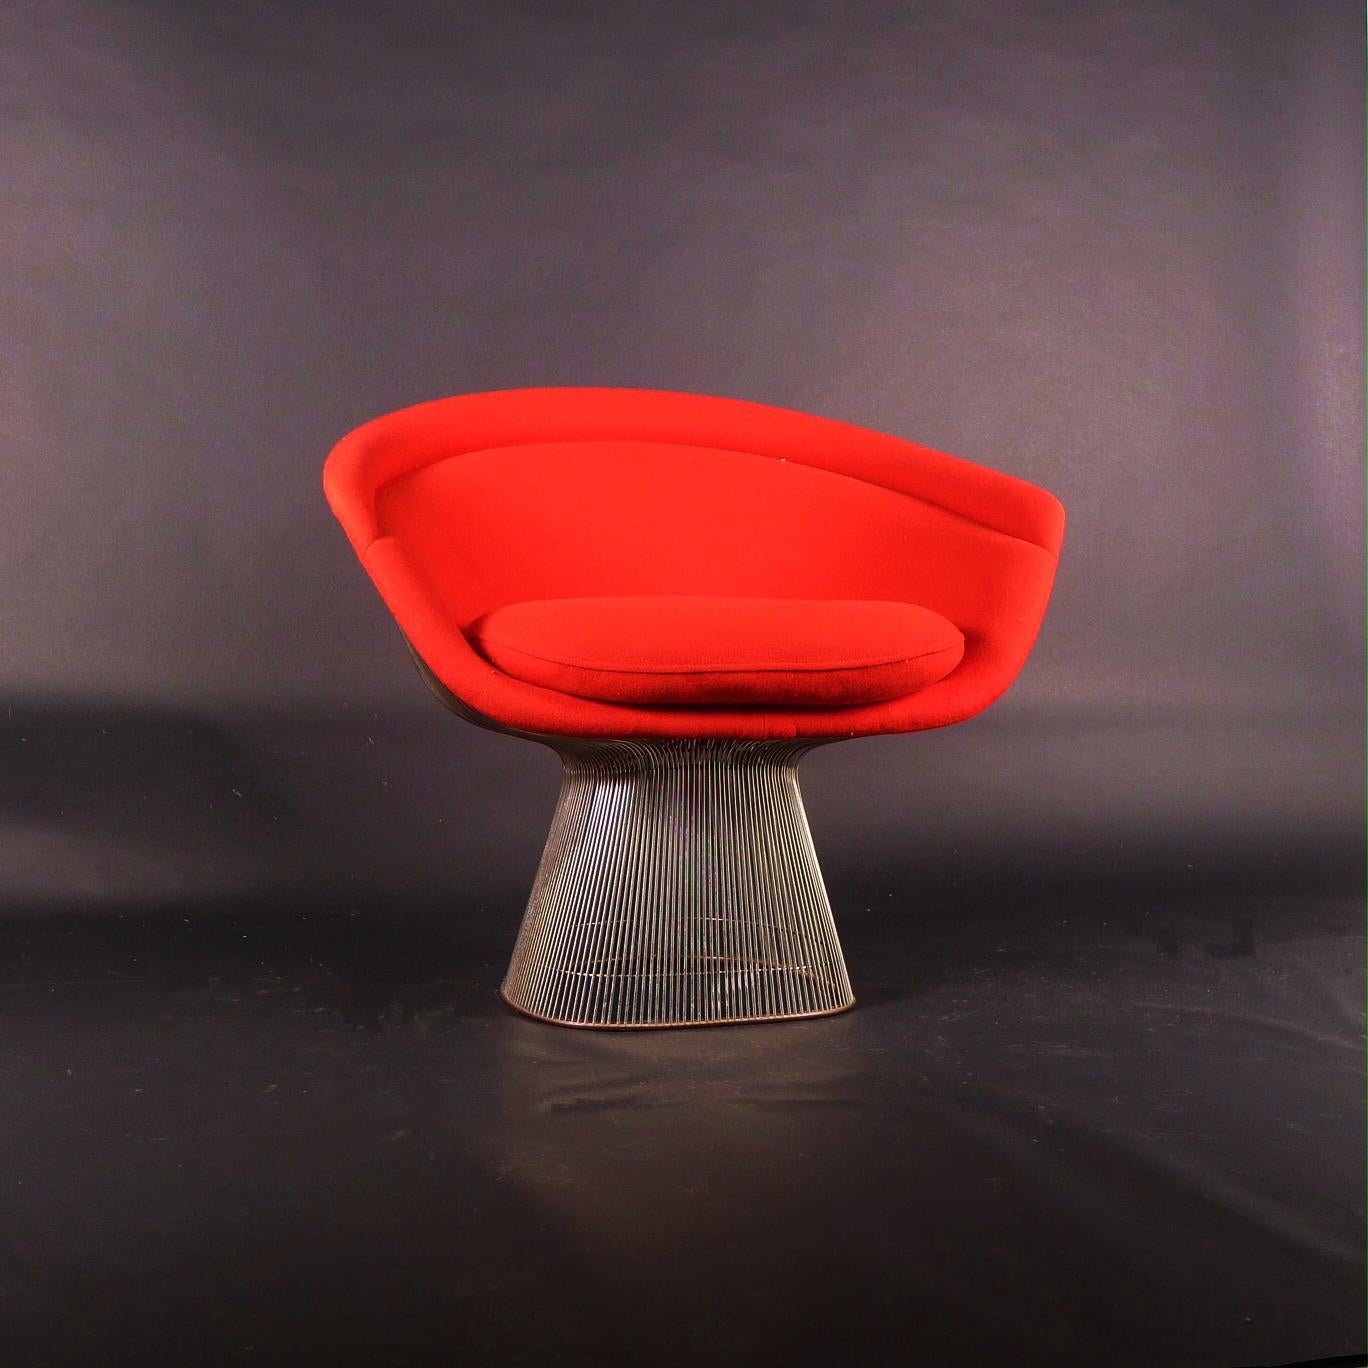 Original 1960er Platner Lounge Chair, entworfen 1966 von Warren Platner und hergestellt von Knoll International.

Dieser ikonische Stuhl besteht aus geformtem Fiberglas, das mit der originalen gepolsterten roten Polsterung überzogen ist, und wird